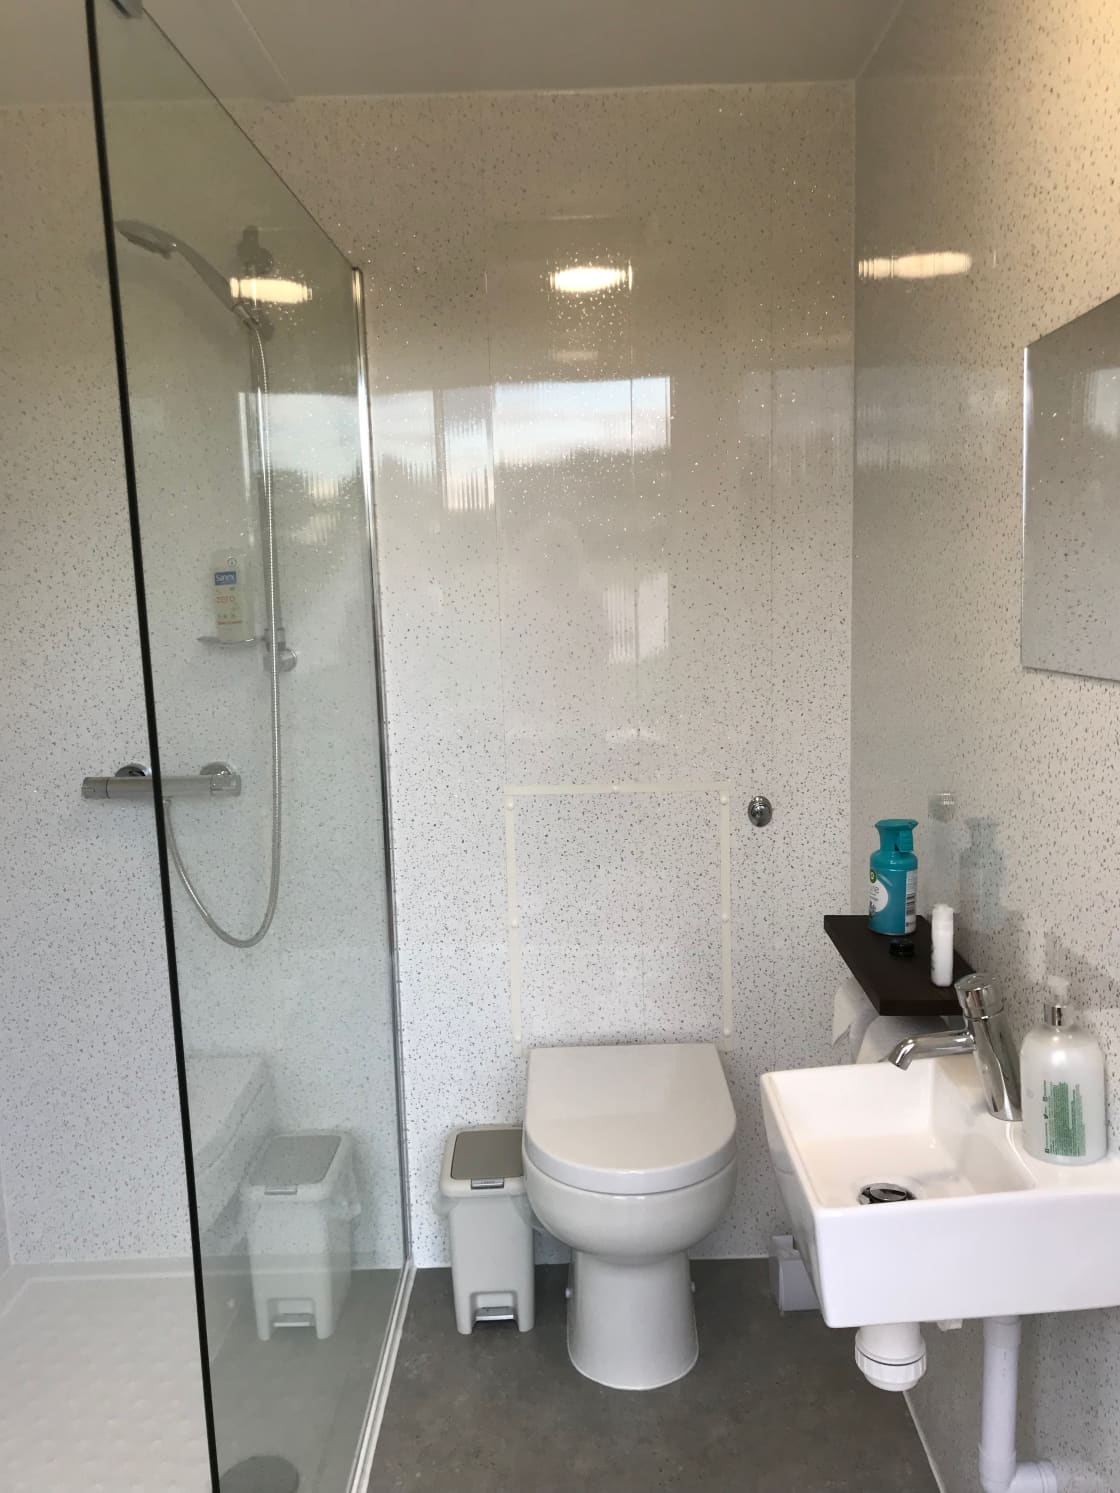 Inside Shower Room